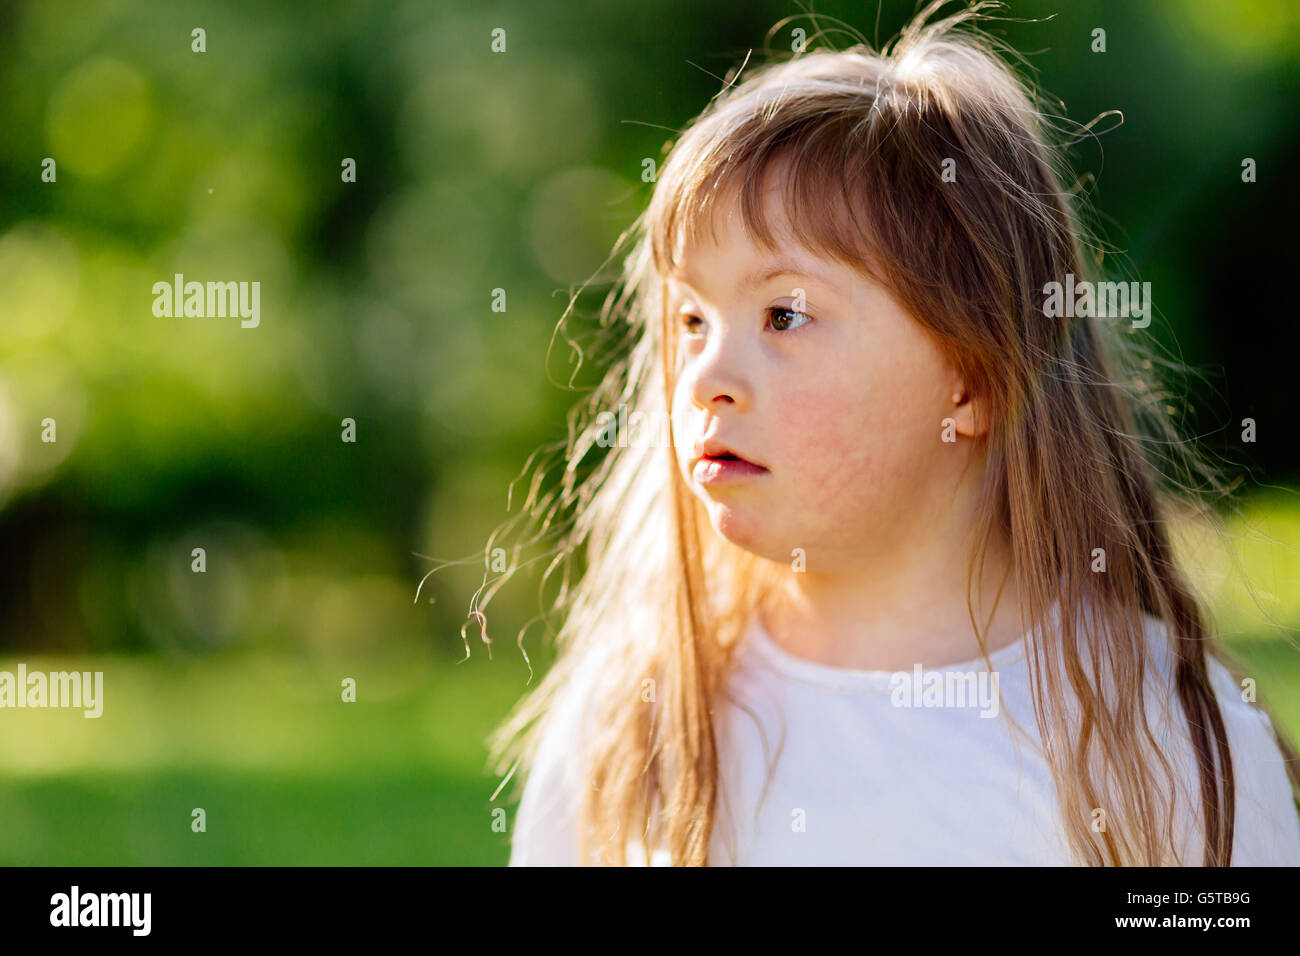 Ritratto di sindrome di down bambino nella natura Foto Stock